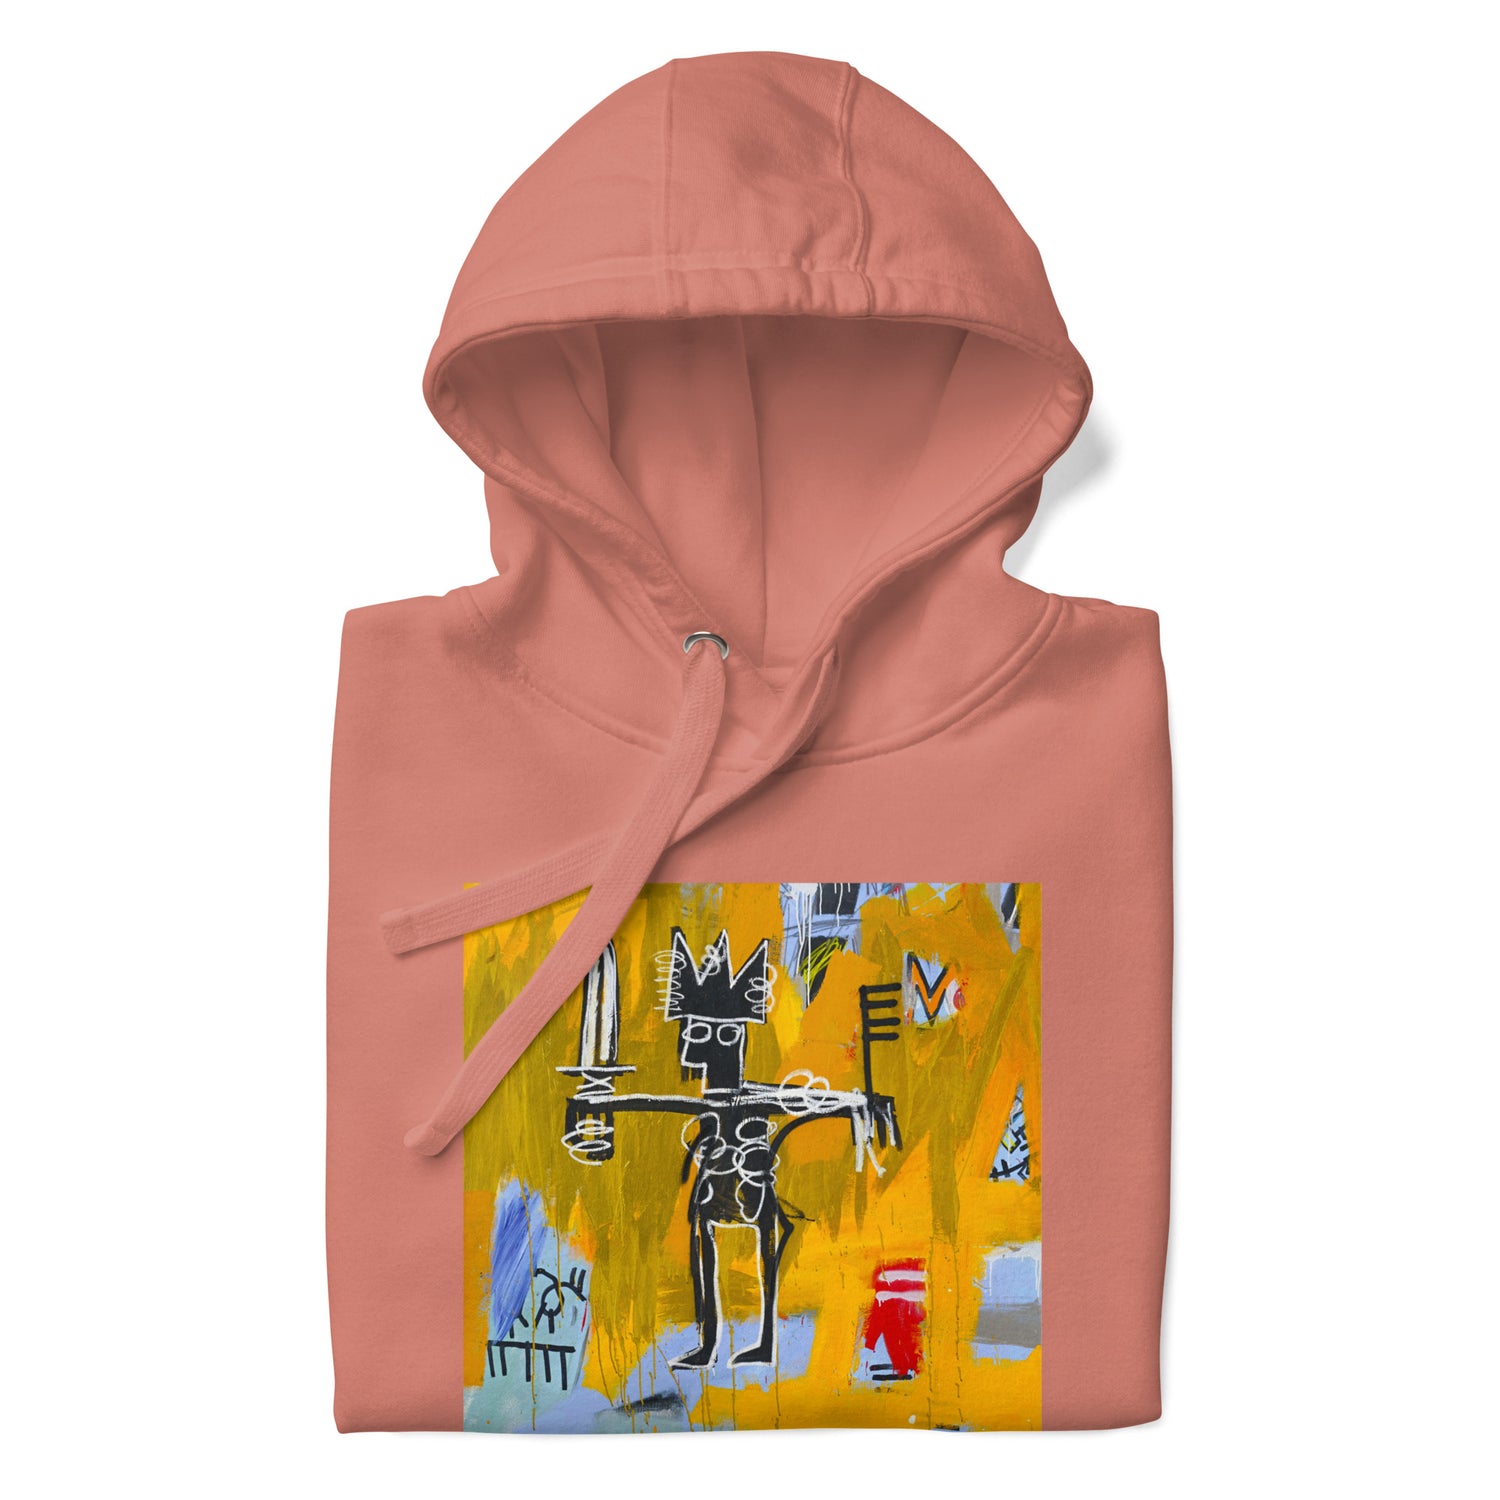 Jean-Michel Basquiat "Julius Caesar on Gold" Artwork Printed Premium Streetwear Sweatshirt Hoodie Salmon Pink